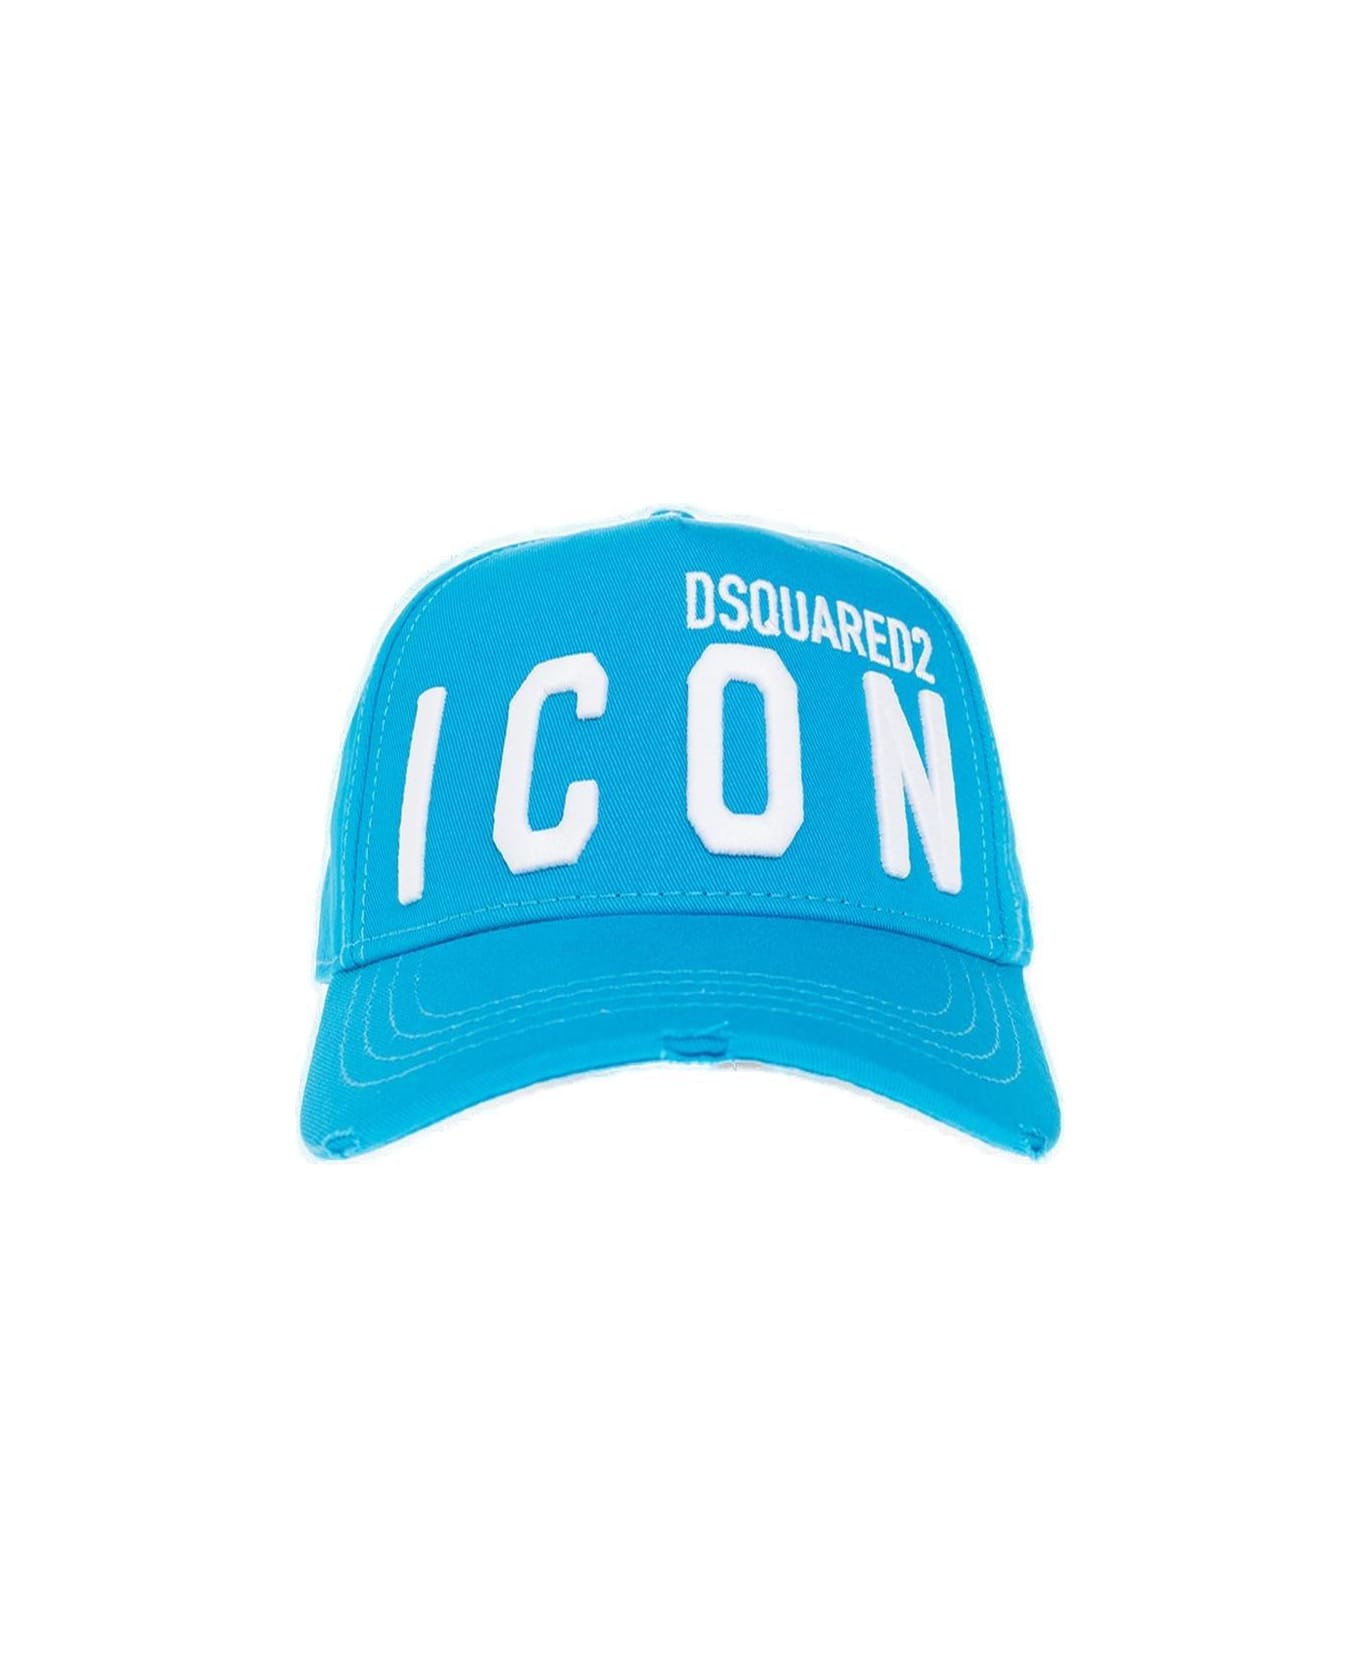 Dsquared2 Be Icon Light Blue Baseball Cap - Non definito 帽子